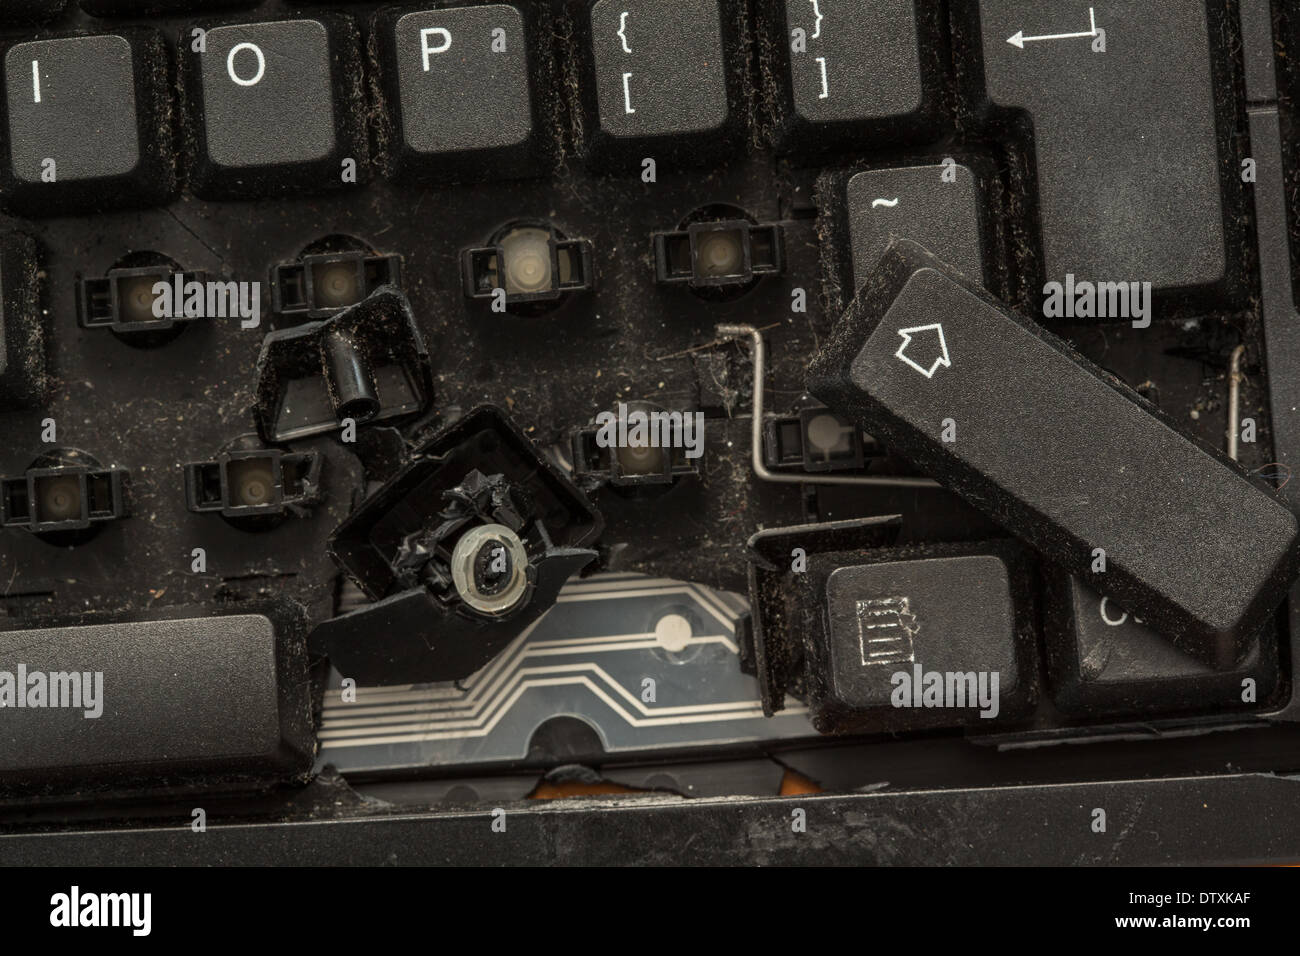 Broken keyboard immagini e fotografie stock ad alta risoluzione - Alamy